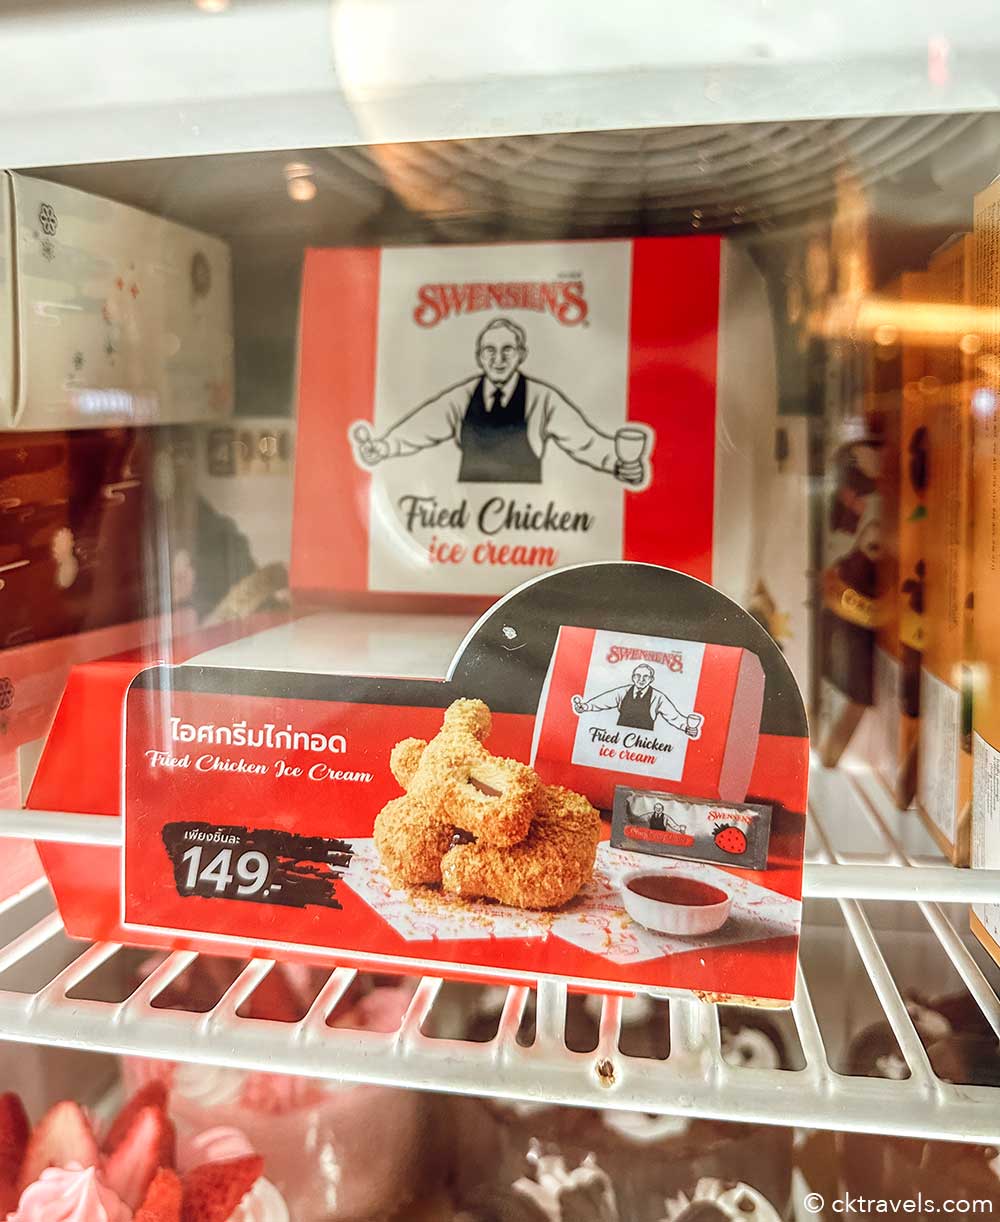 Tasting Swensen's fried chicken ice cream in Thailand - CK Travels